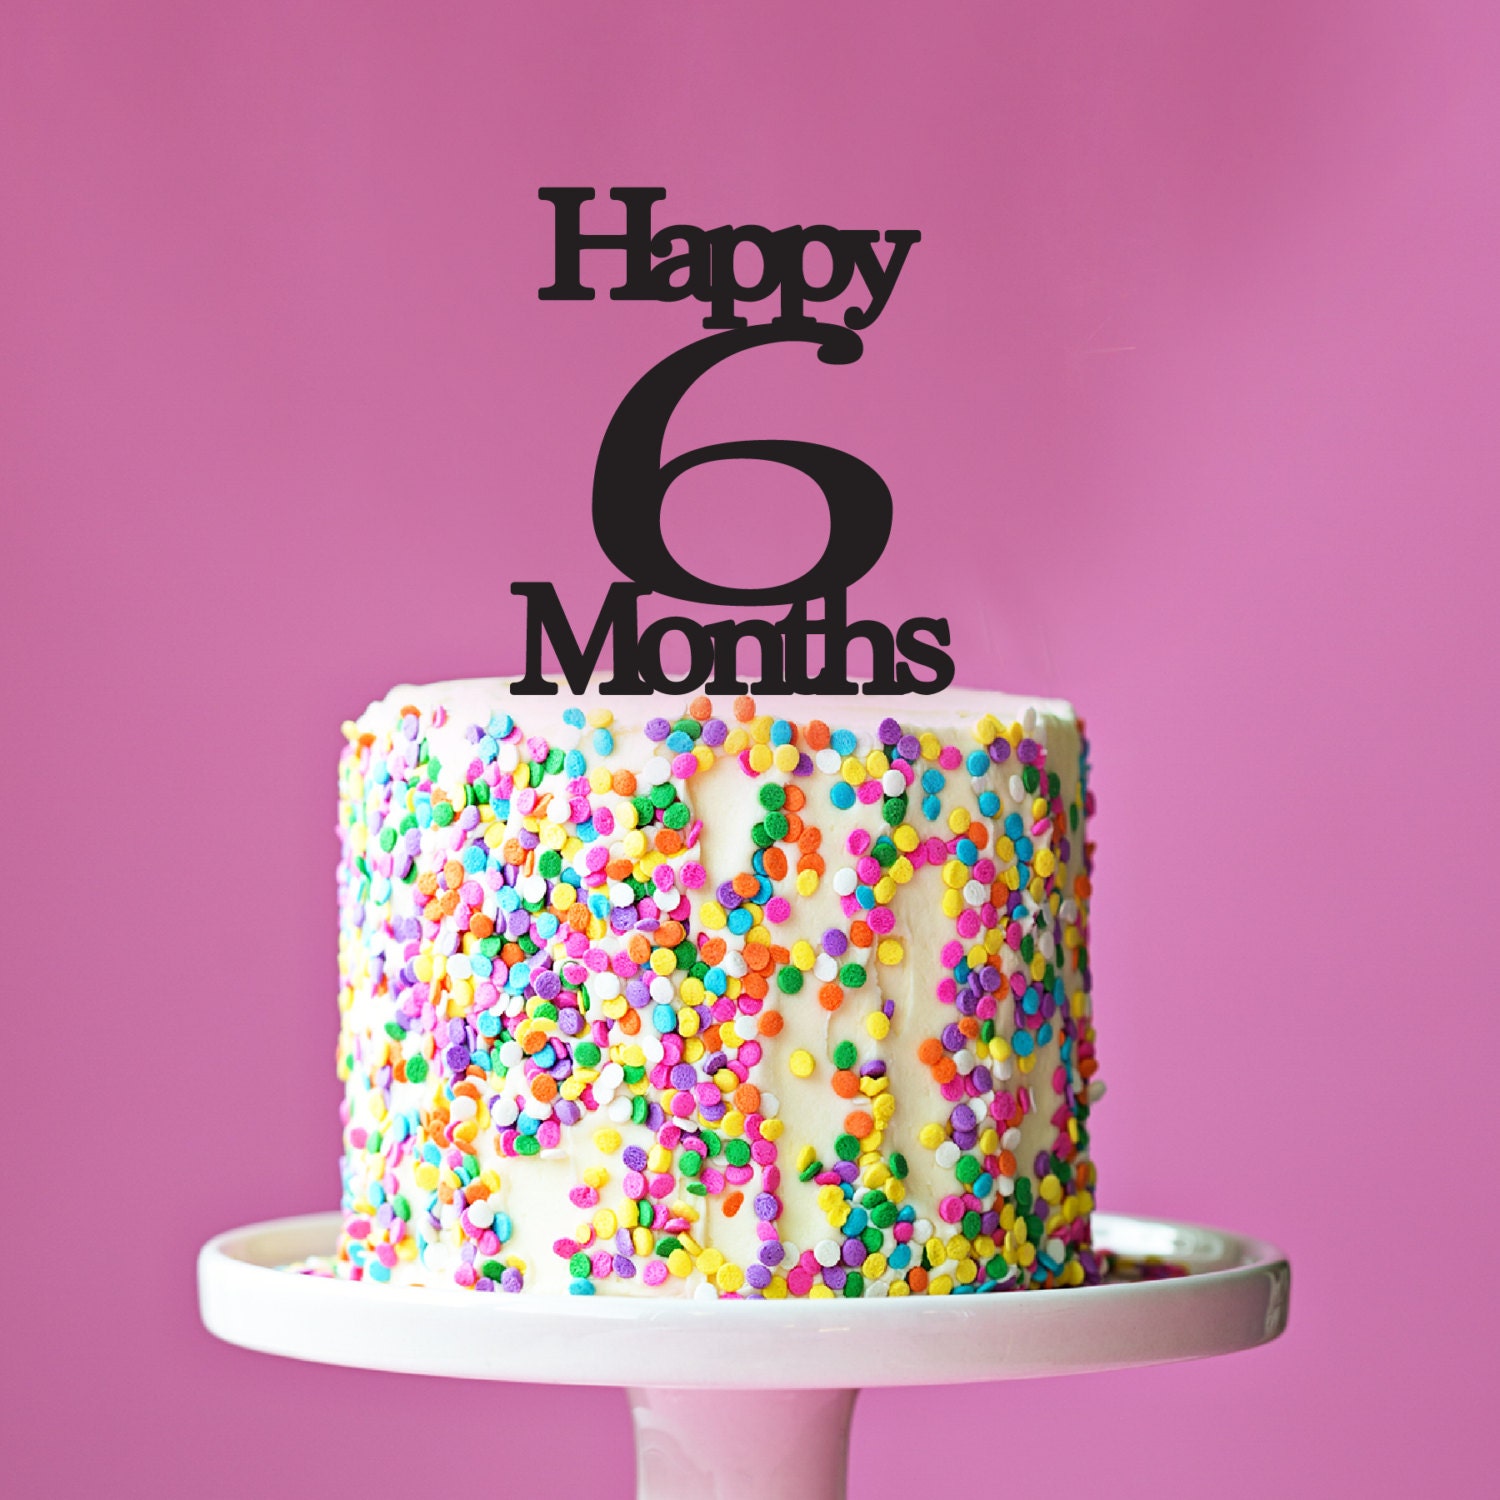 11 июня день рождения. Торт для девочки 6 лет на день рождения. Торт 6 months. Happy 6 months. Happy Birthday 6 months надпись.